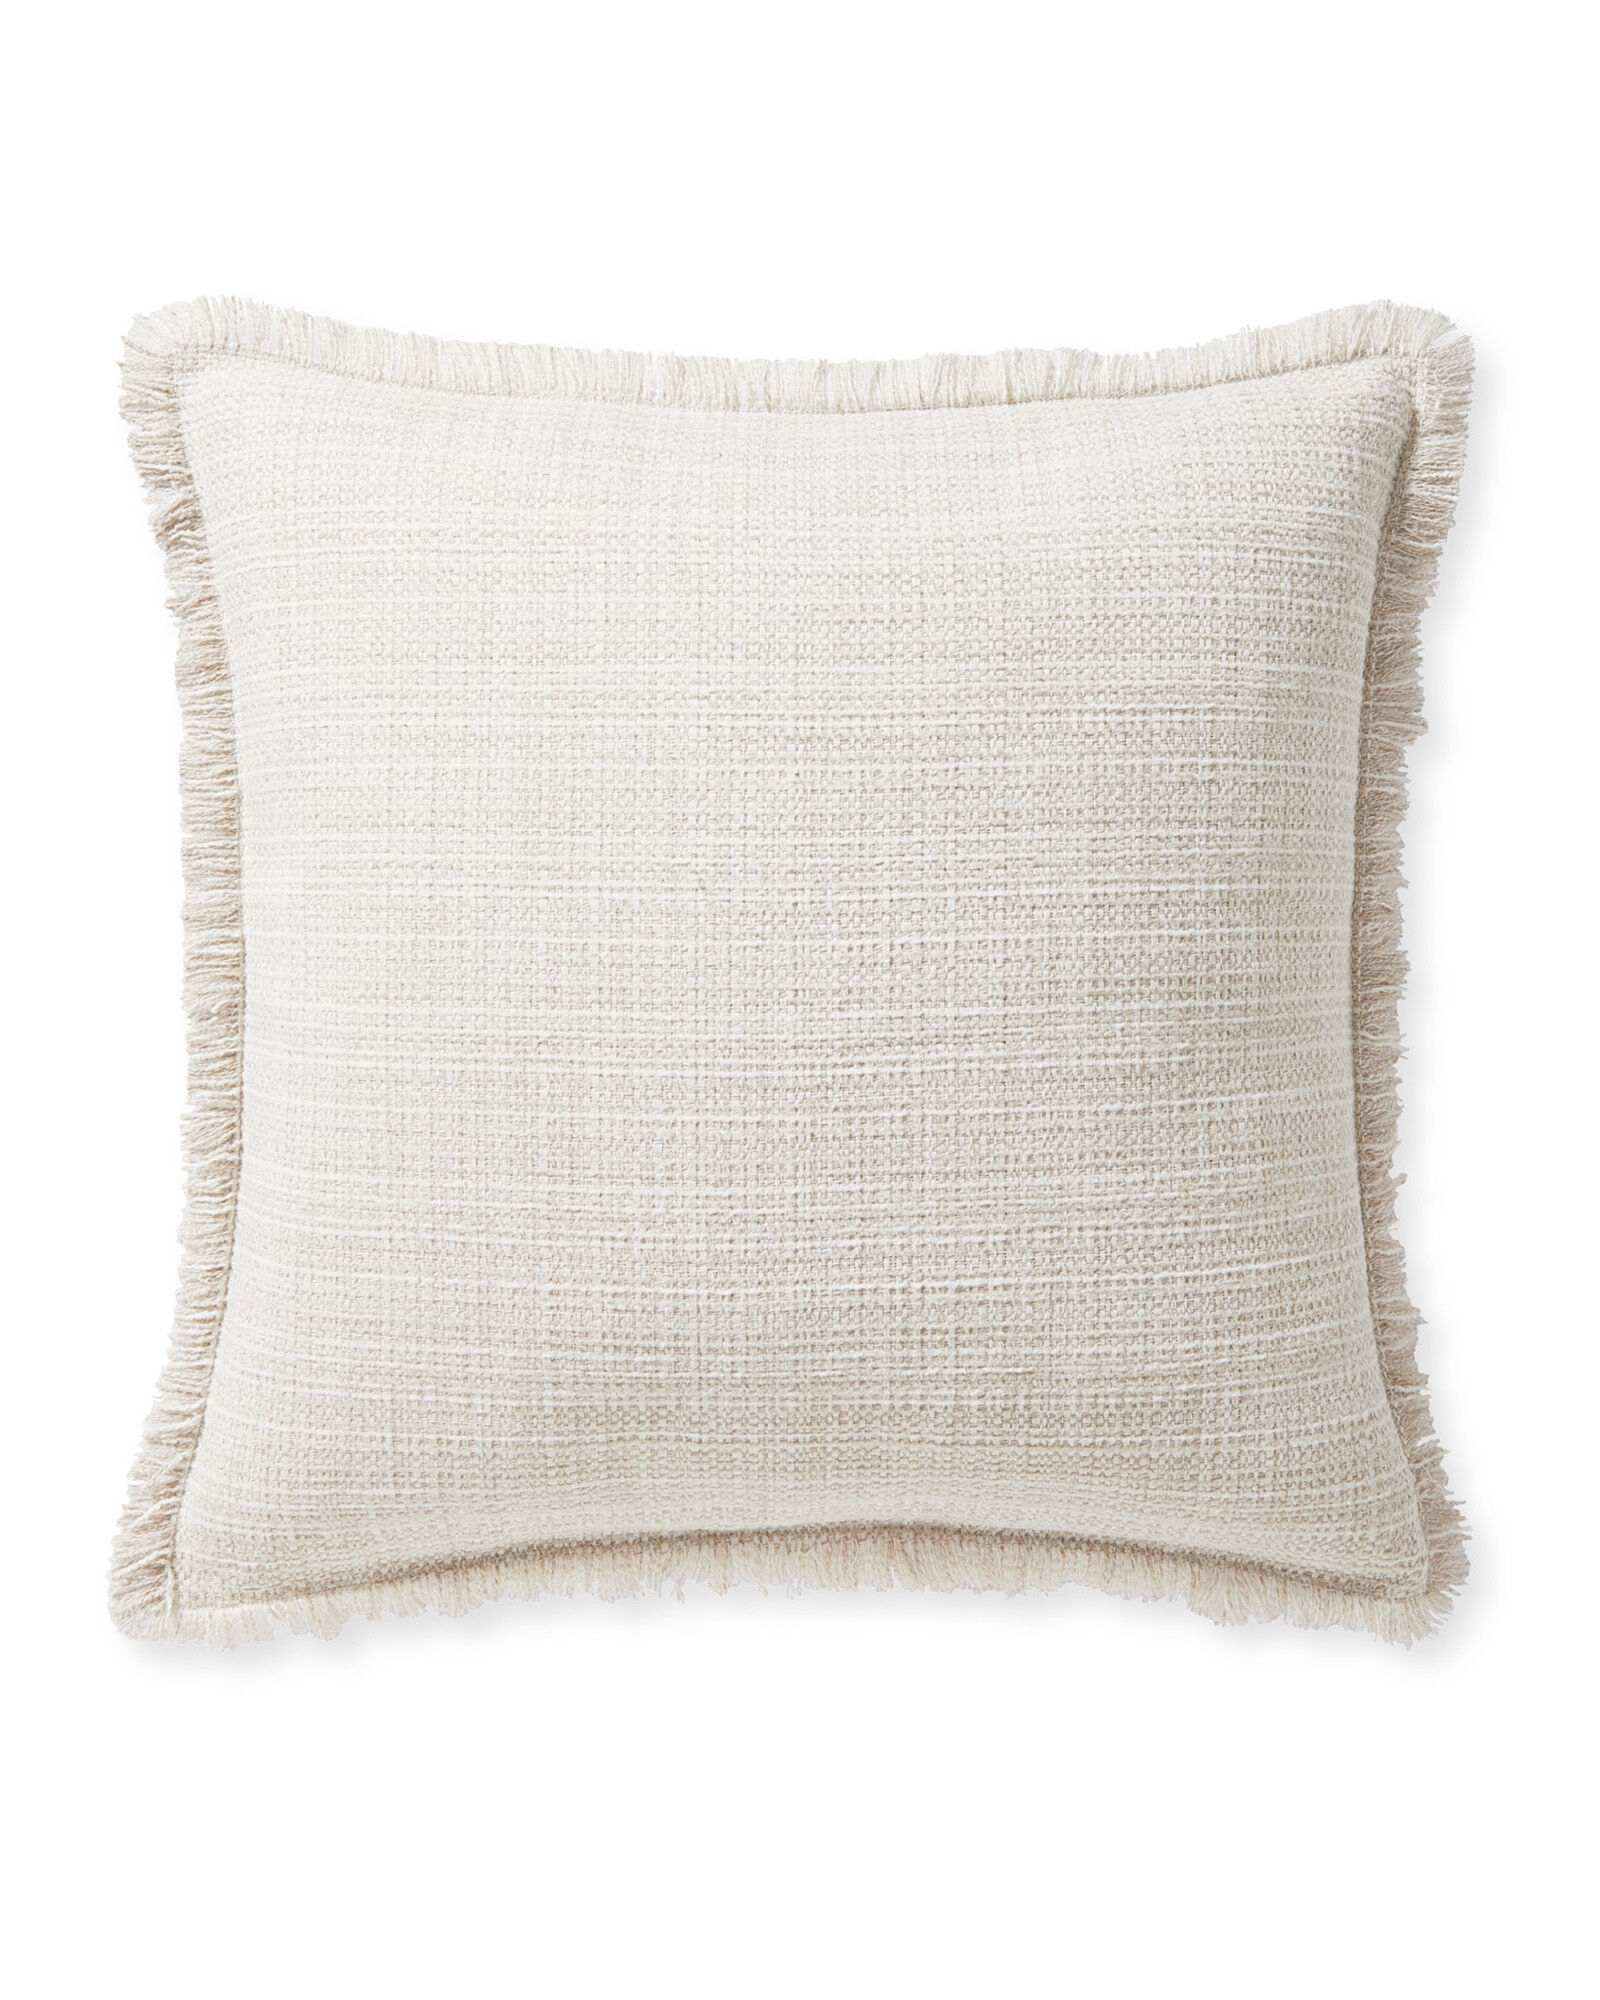 Perennials® Rosemount Pillow Cover - Image 0